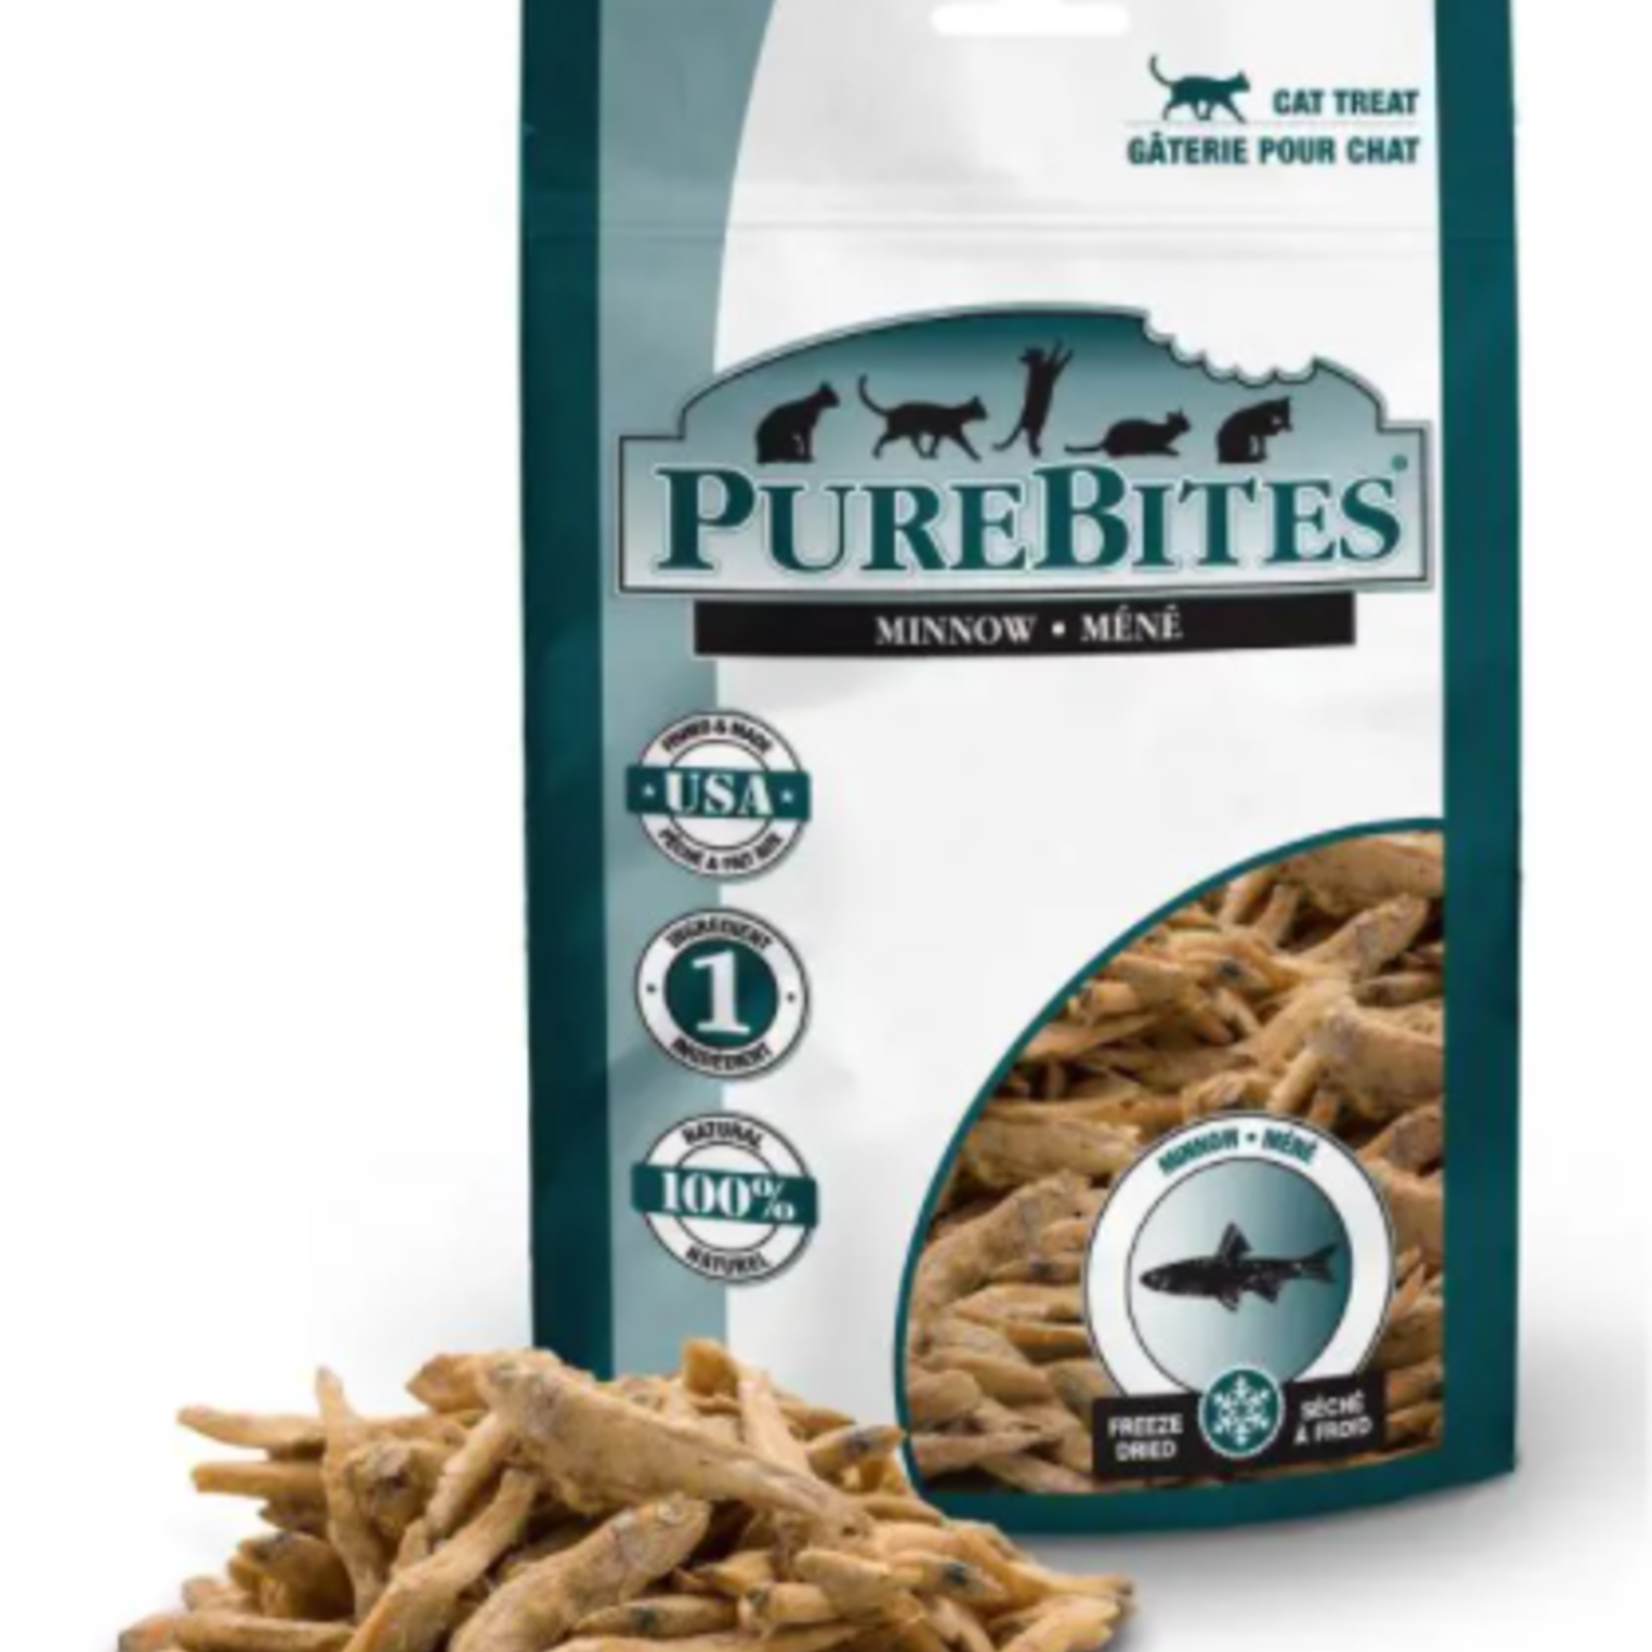 PureBites Ménés- Gâteries séchées à froid pour chat (66g)